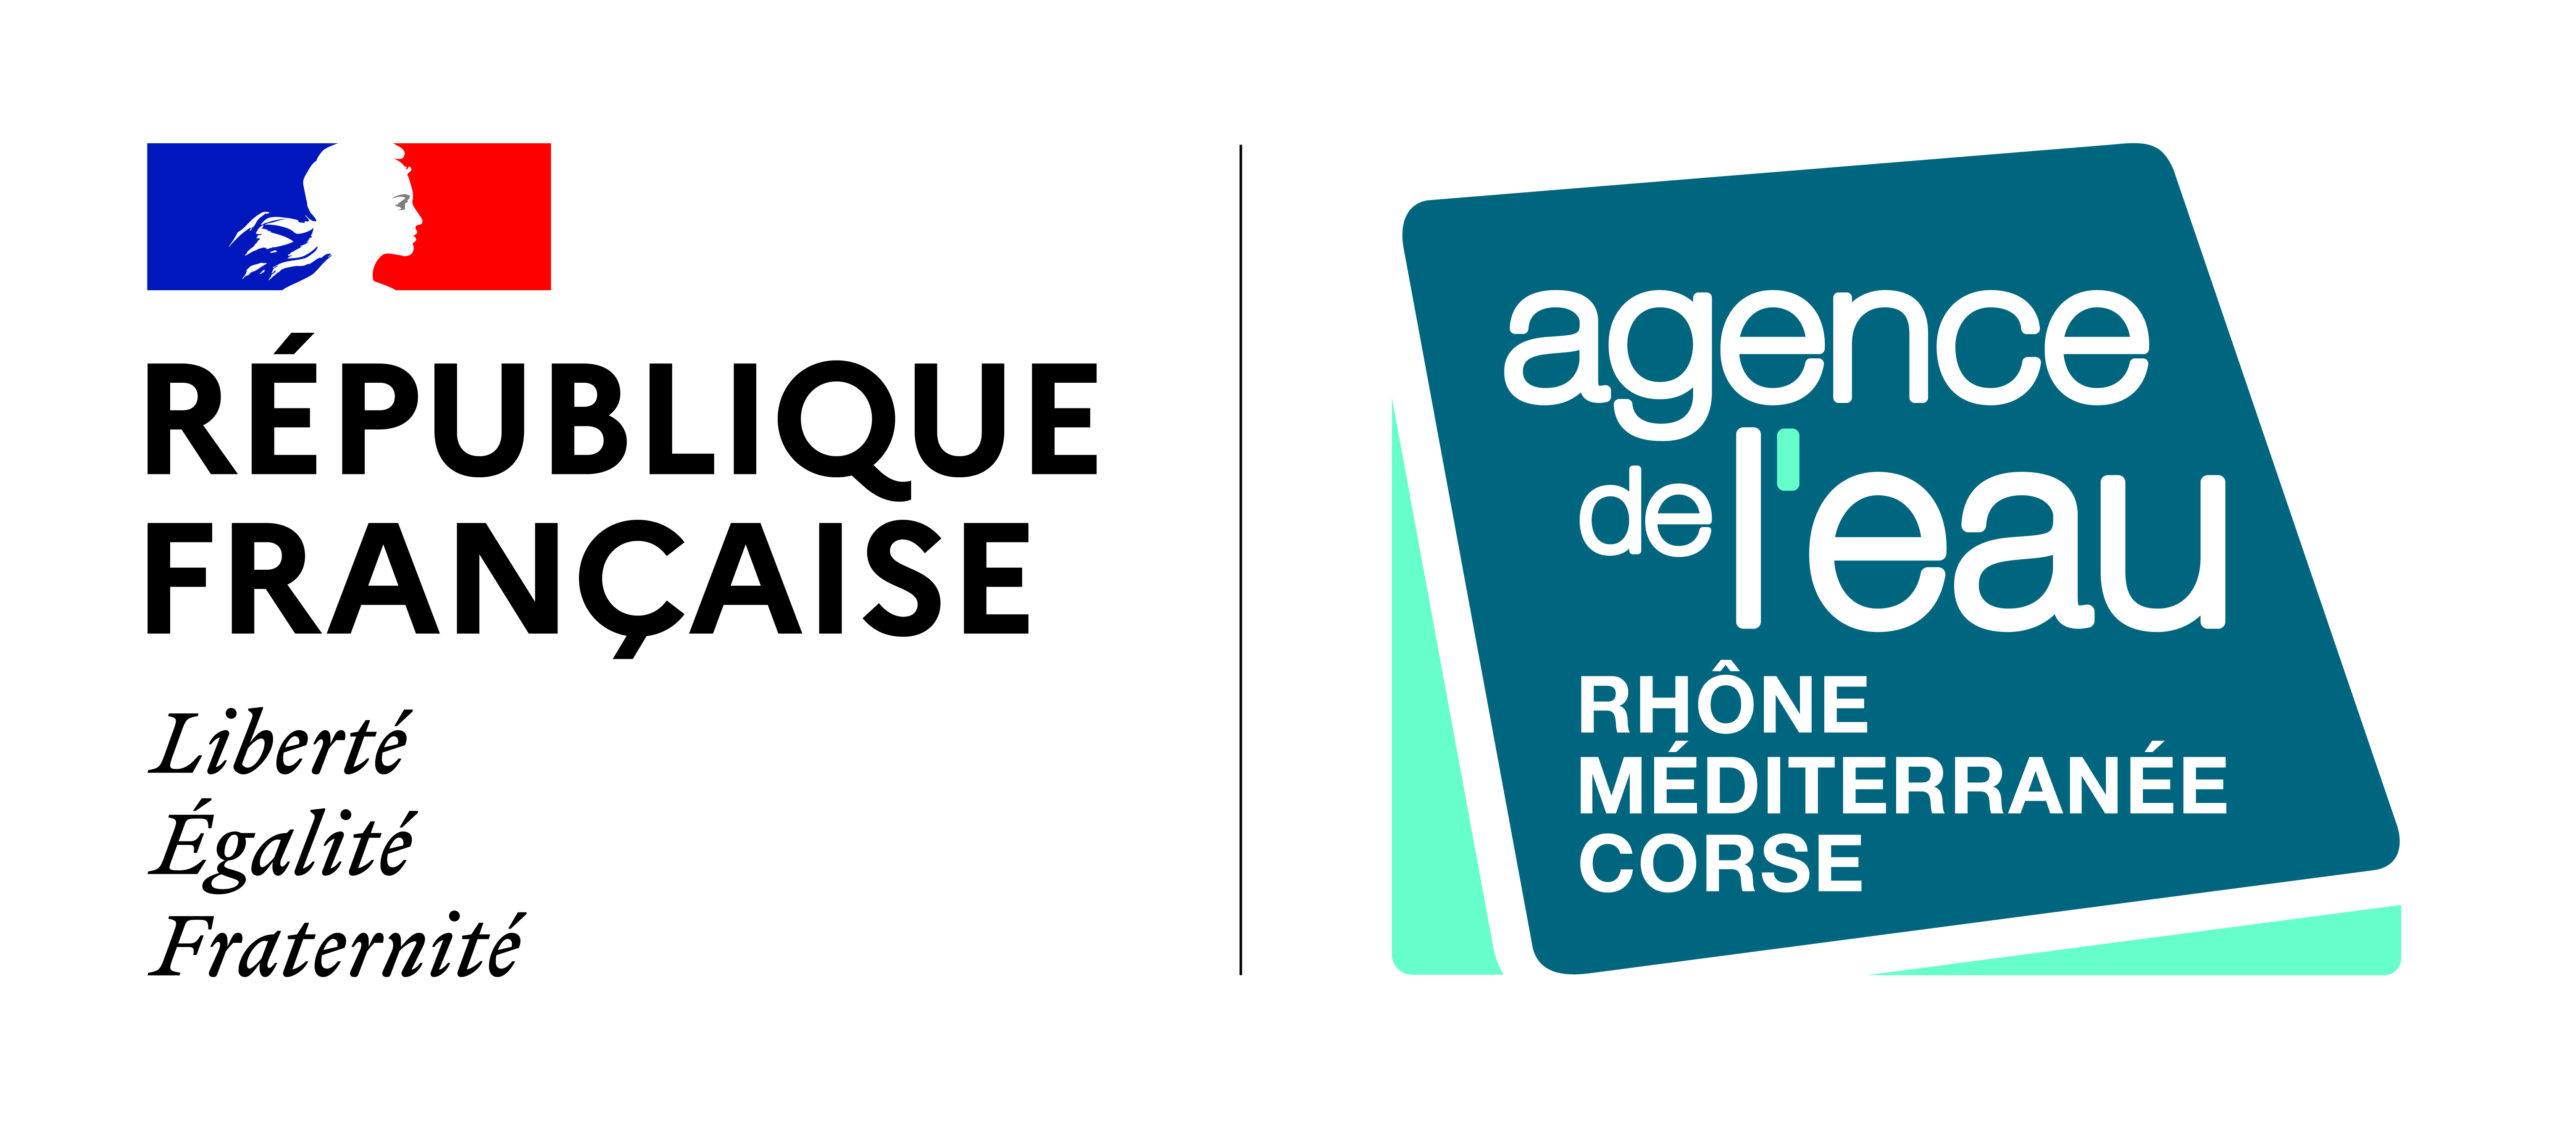 Agence de l'eau Rhône-Méditerranée-Corse